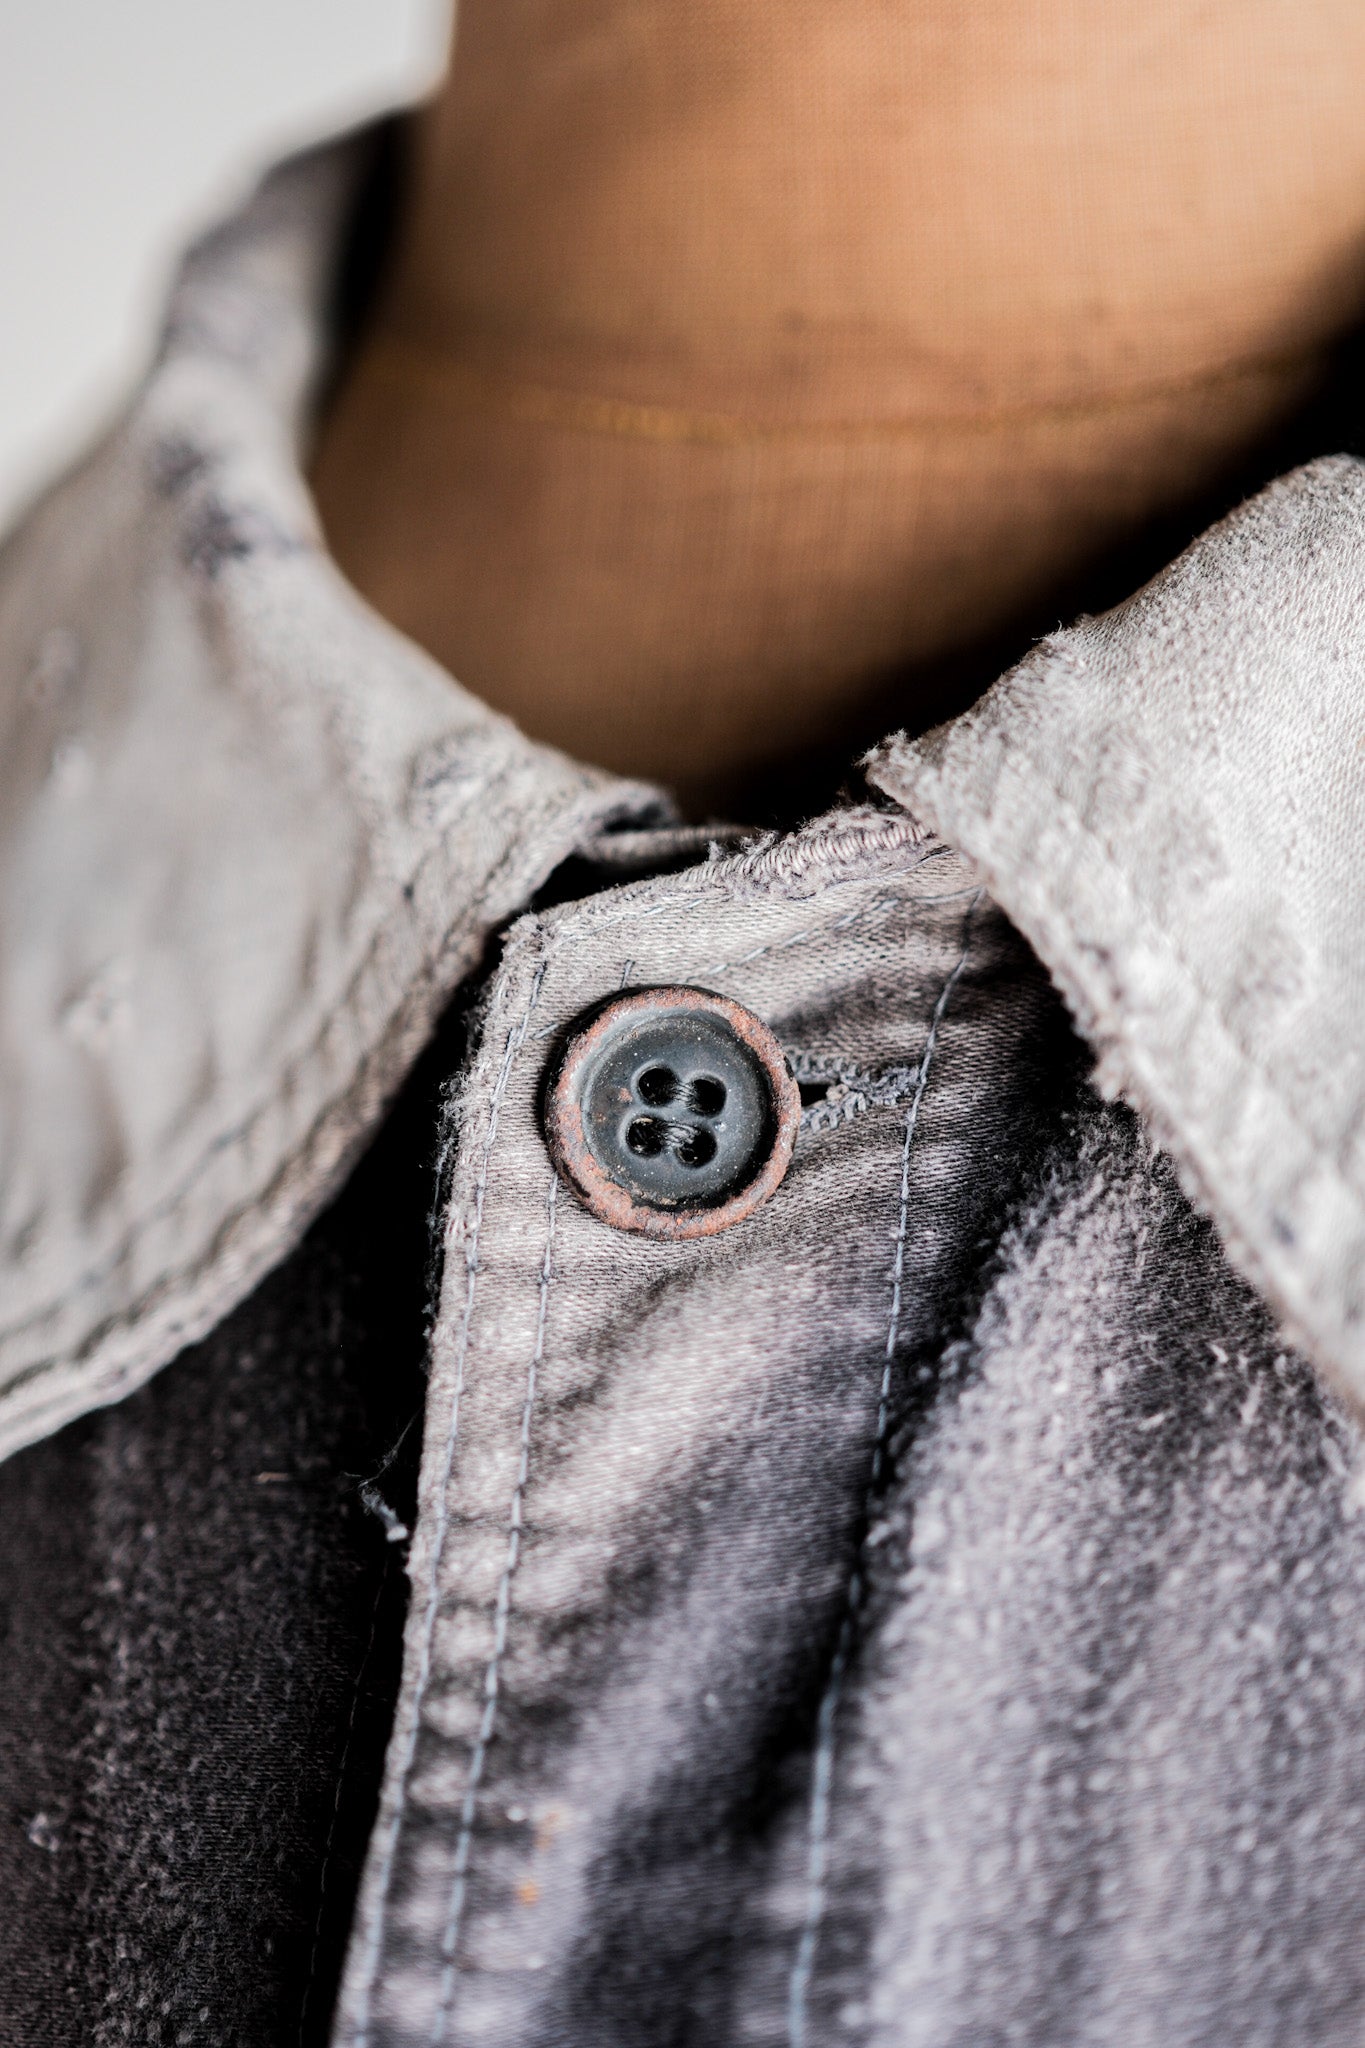 [~ 50's] Jacket de travail de moleskin noirs vintage français "patchwork"